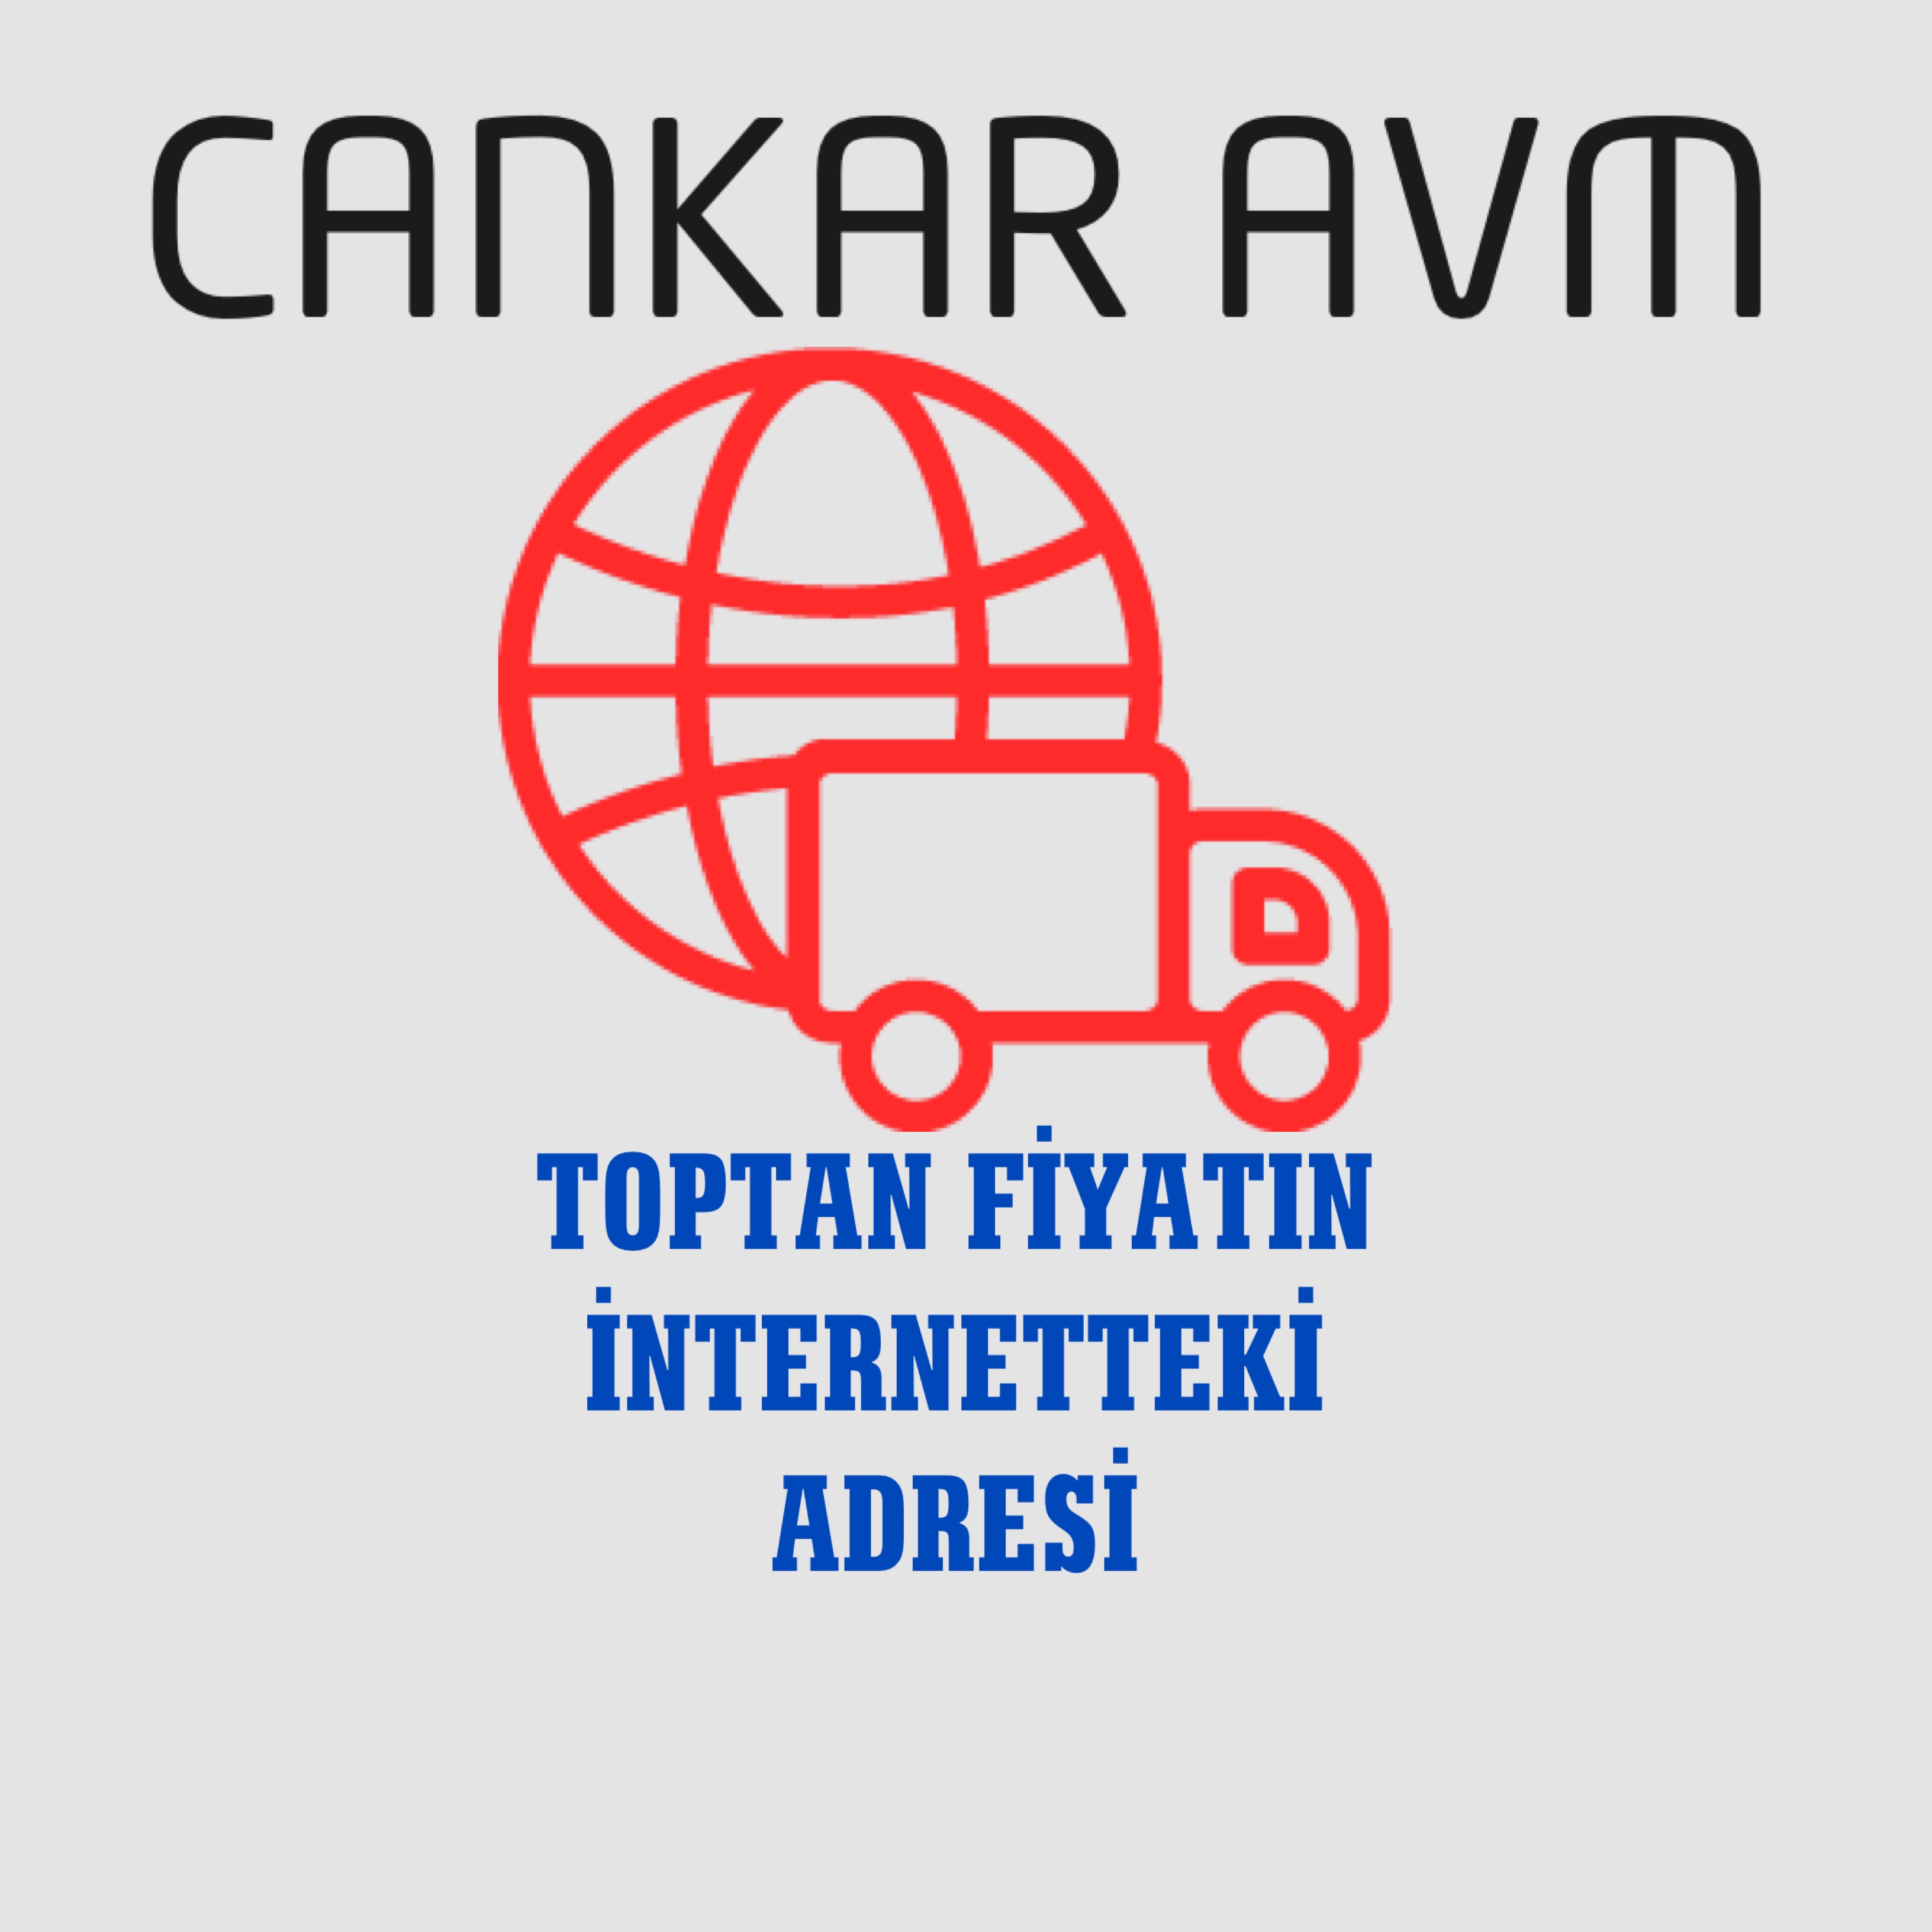 CANKAR_AVM